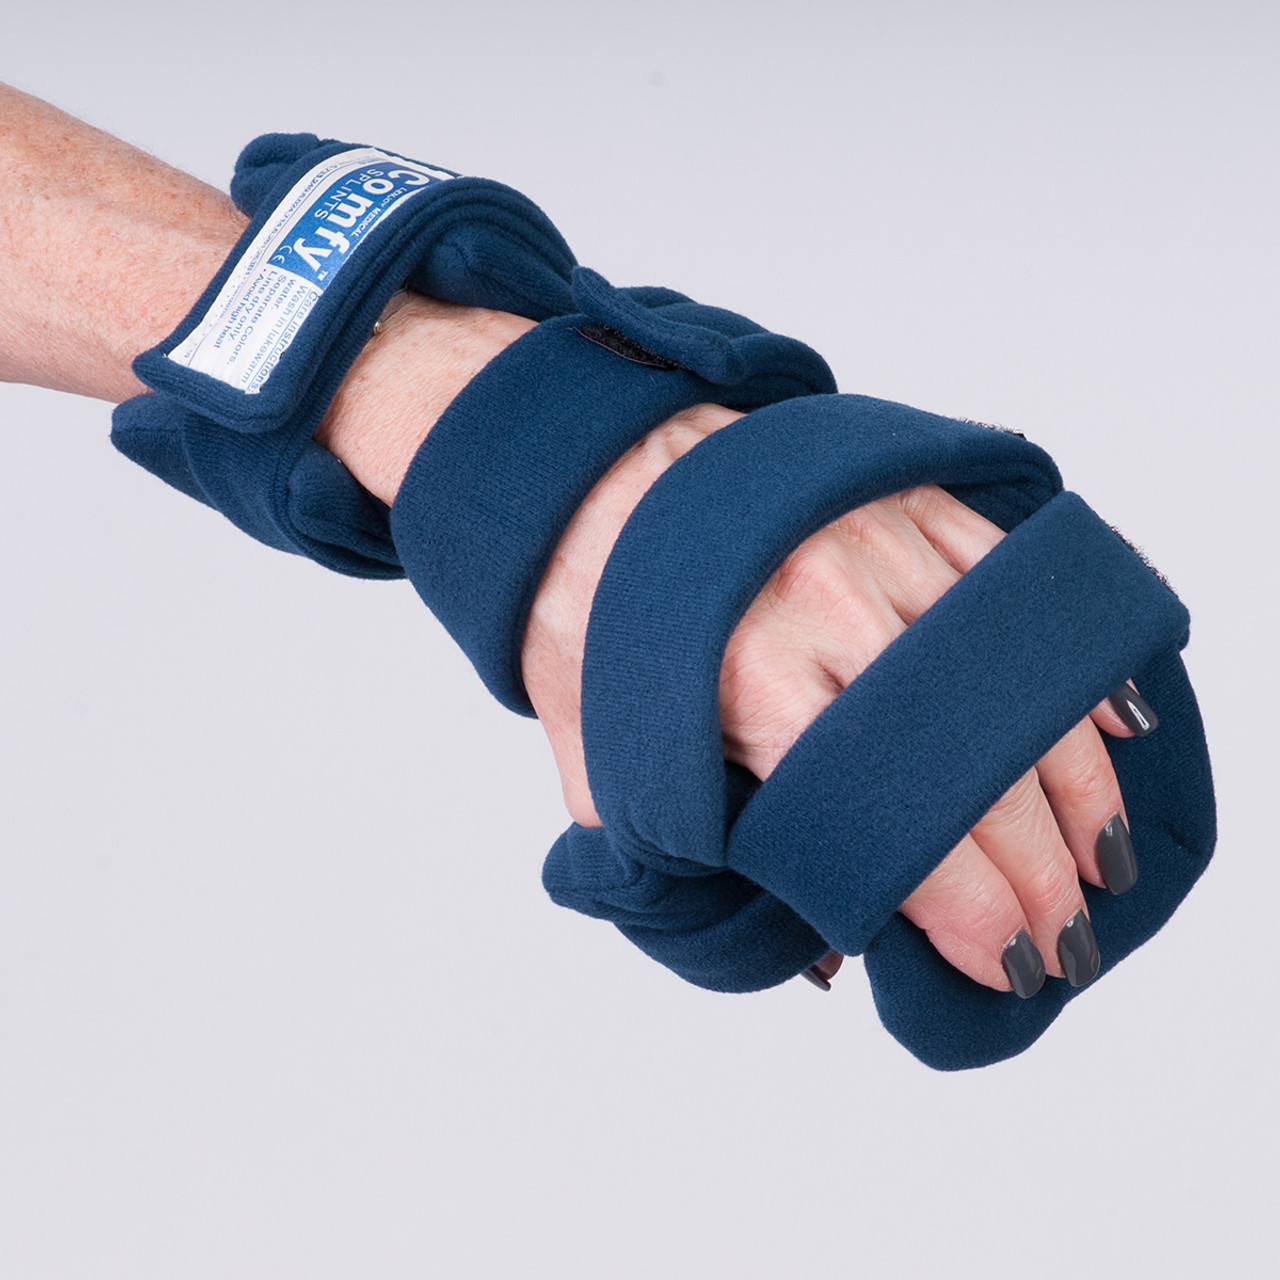 Comfy Hand/Thumb Orthosis